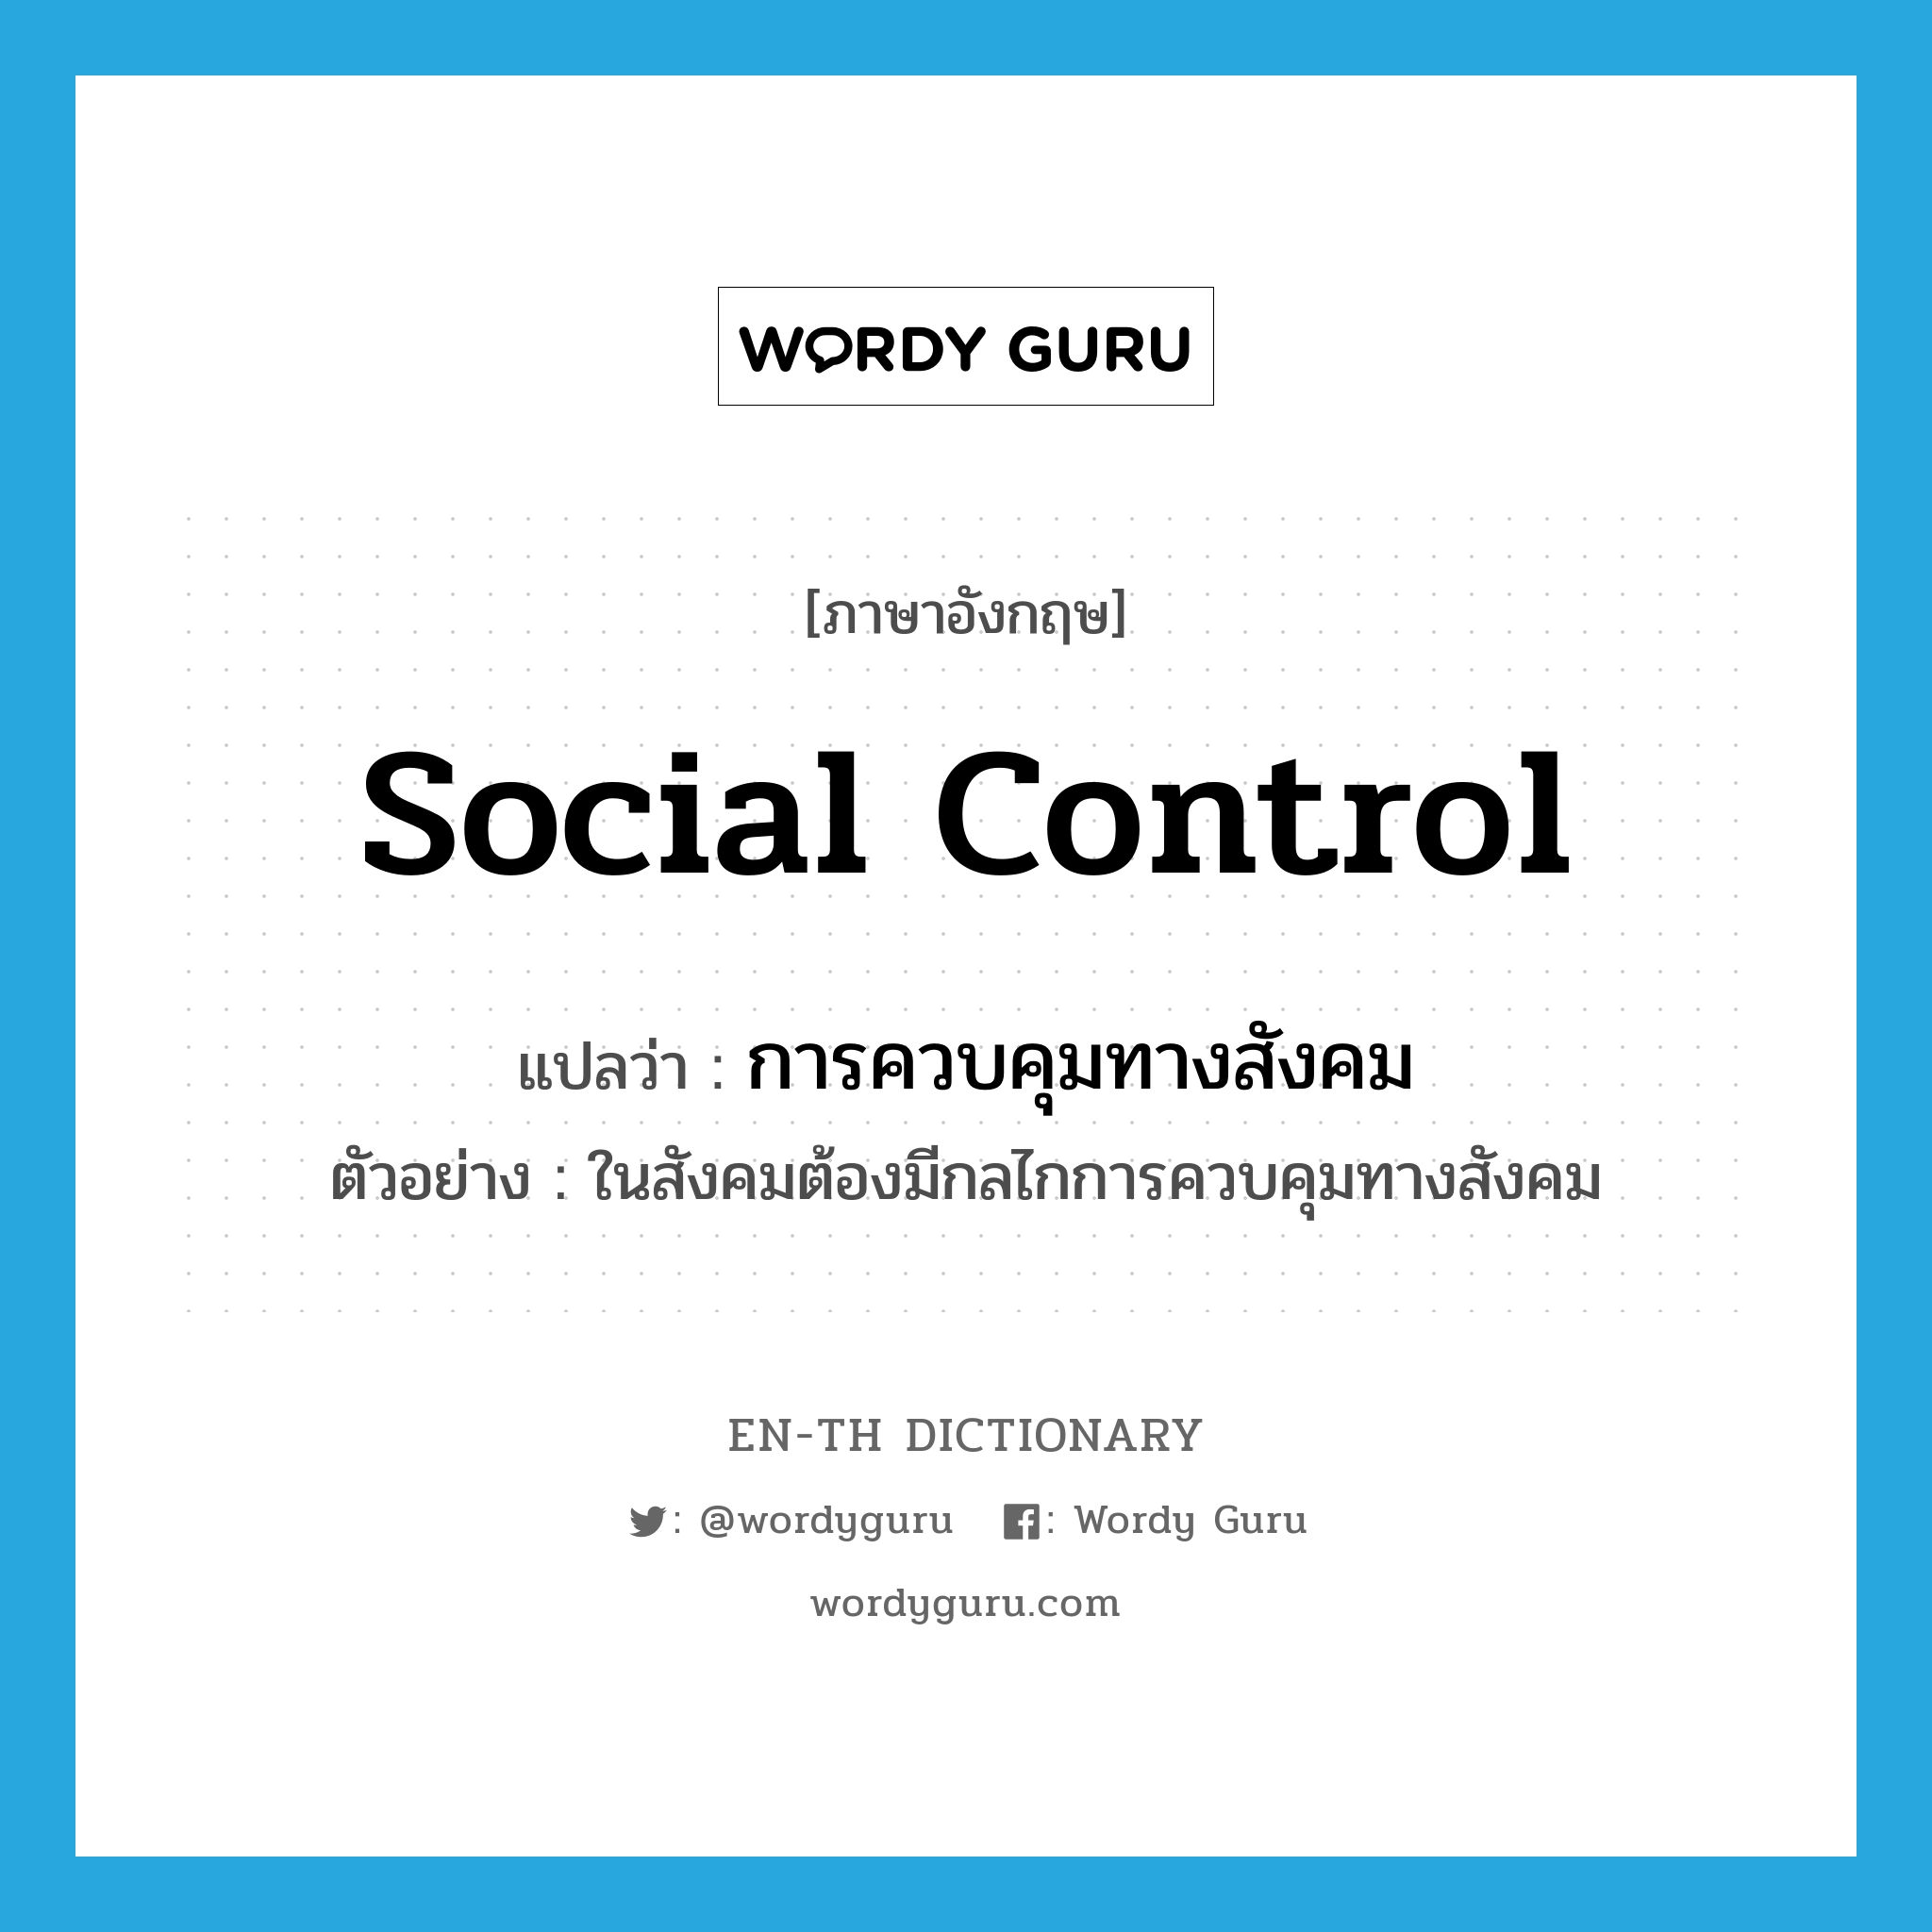 การควบคุมทางสังคม ภาษาอังกฤษ?, คำศัพท์ภาษาอังกฤษ การควบคุมทางสังคม แปลว่า social control ประเภท N ตัวอย่าง ในสังคมต้องมีกลไกการควบคุมทางสังคม หมวด N